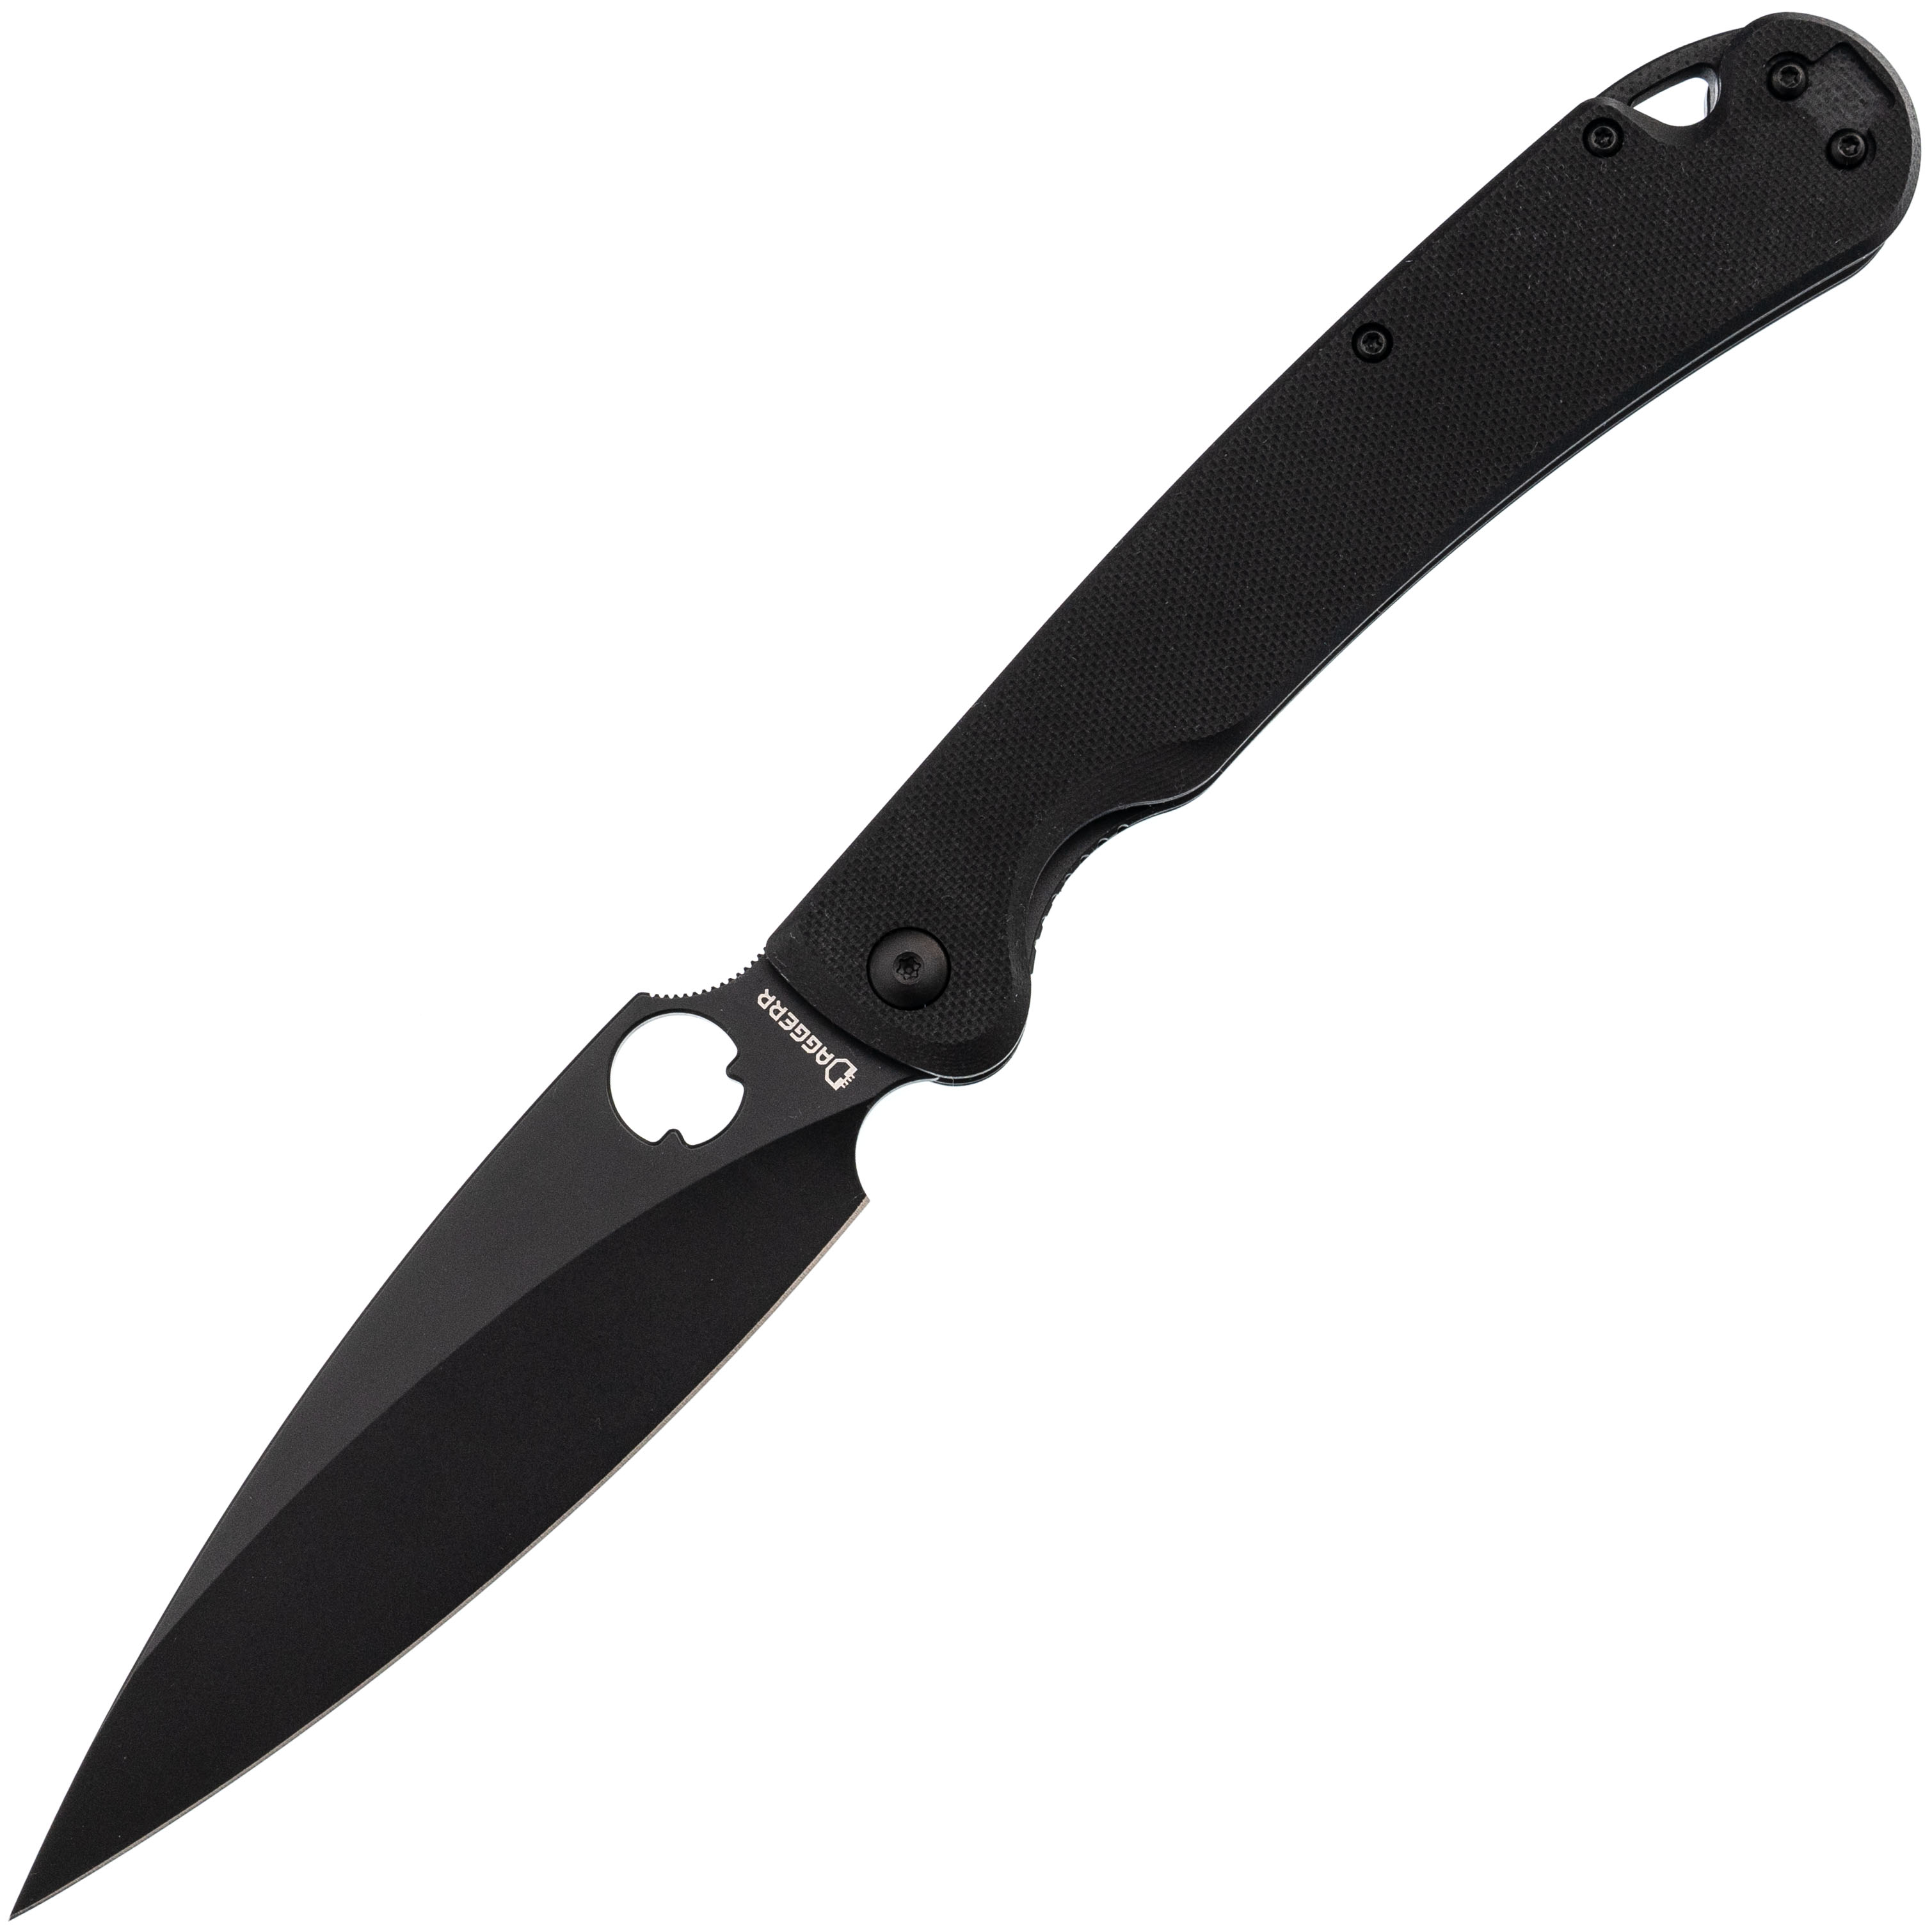 Складной нож Daggerr Sting XL all black DLC, сталь D2, рукоять G10